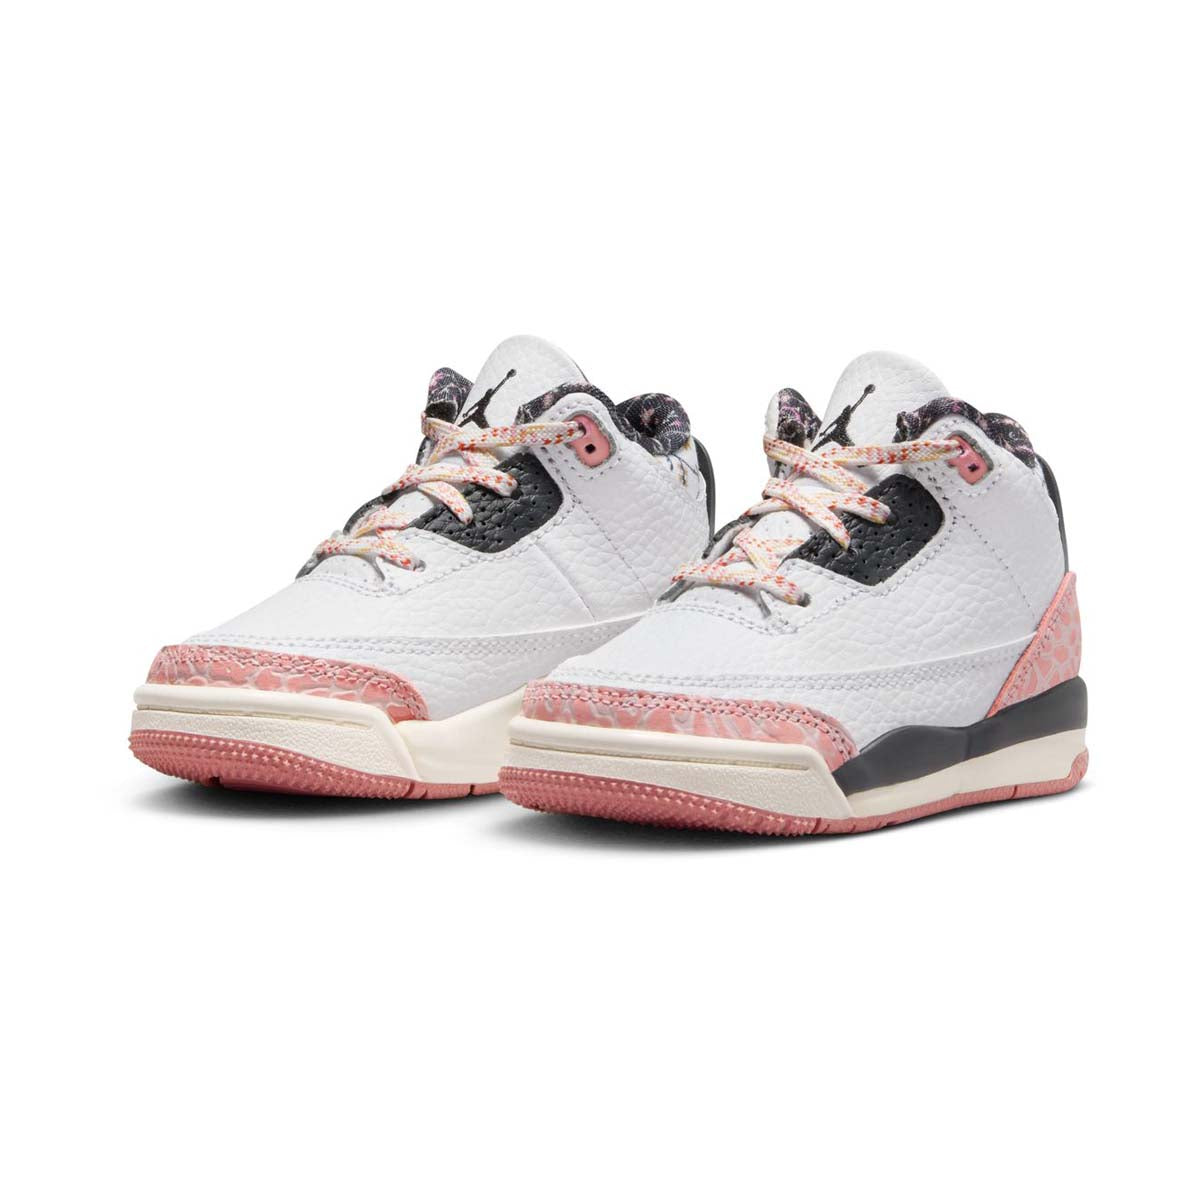 Jordan 3 Retro Ivory Baby/Toddler Shoes